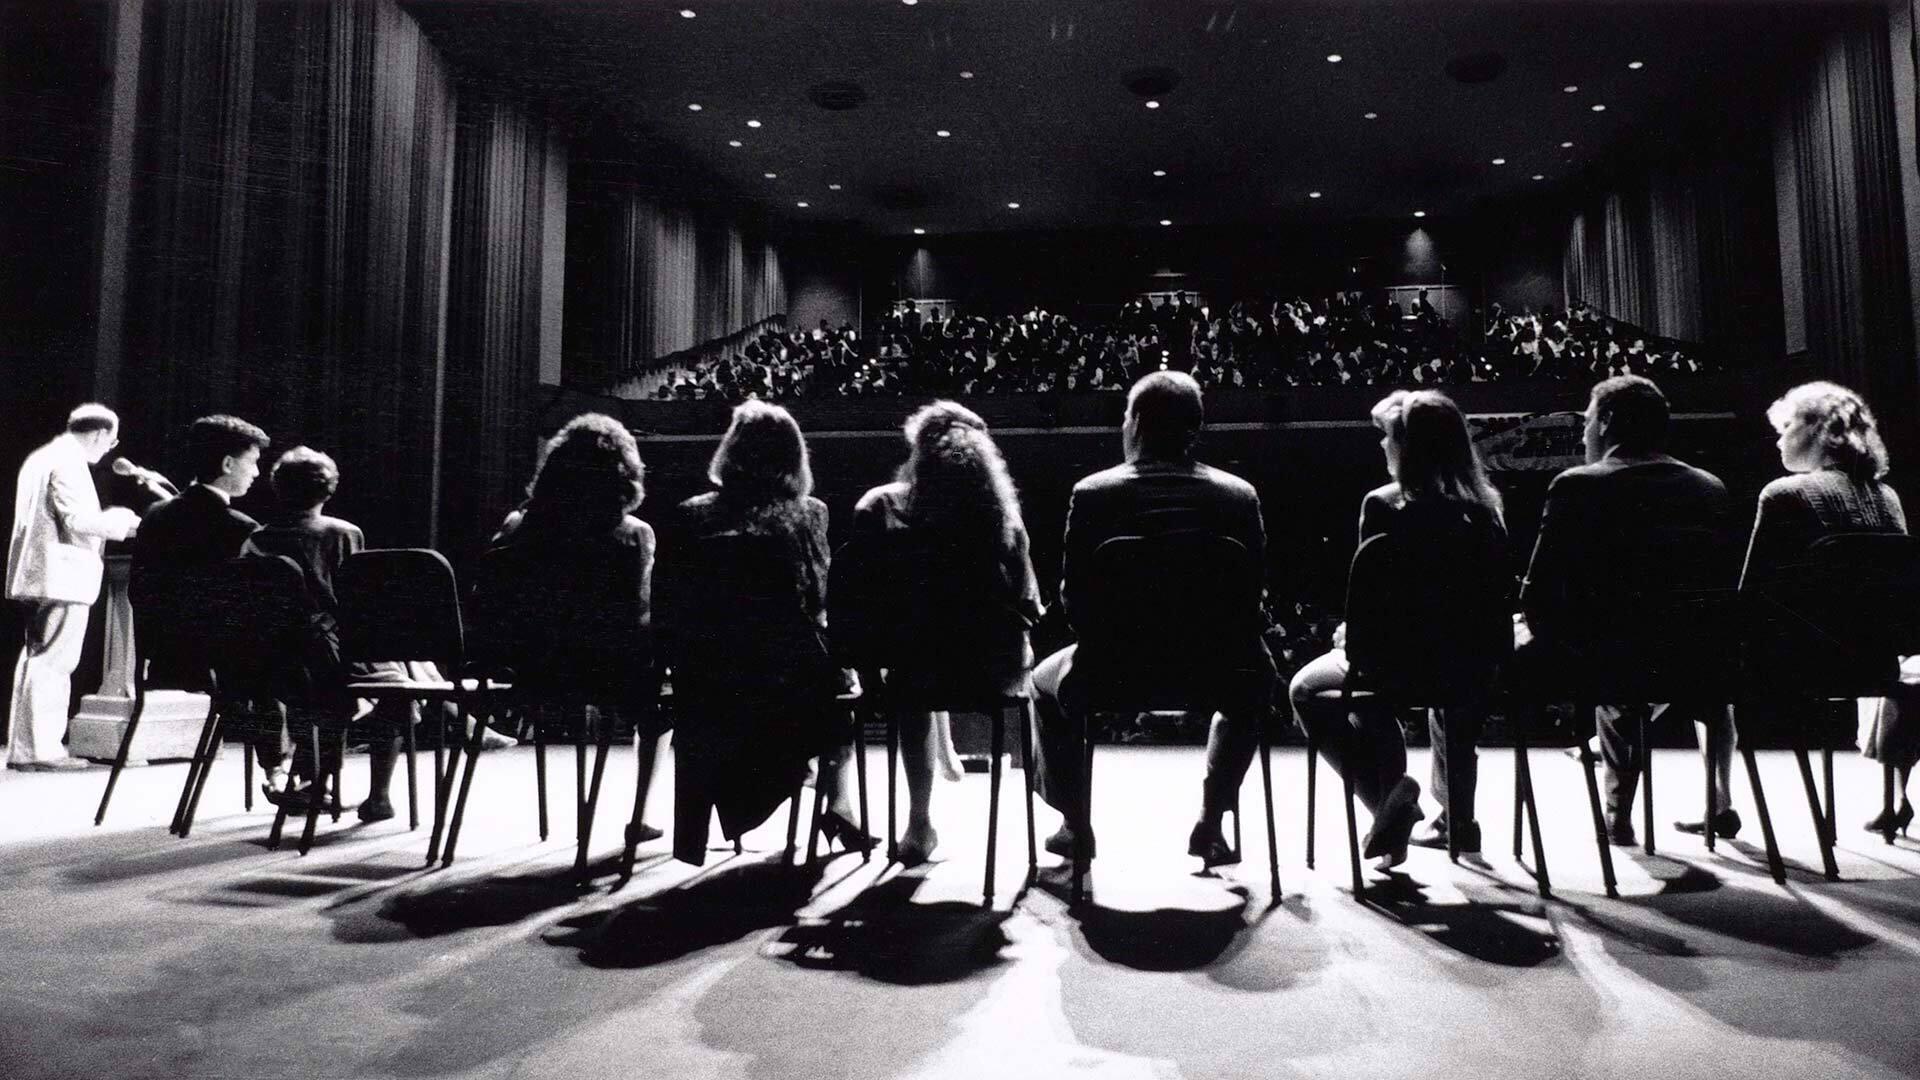 line of panelists sit on stage